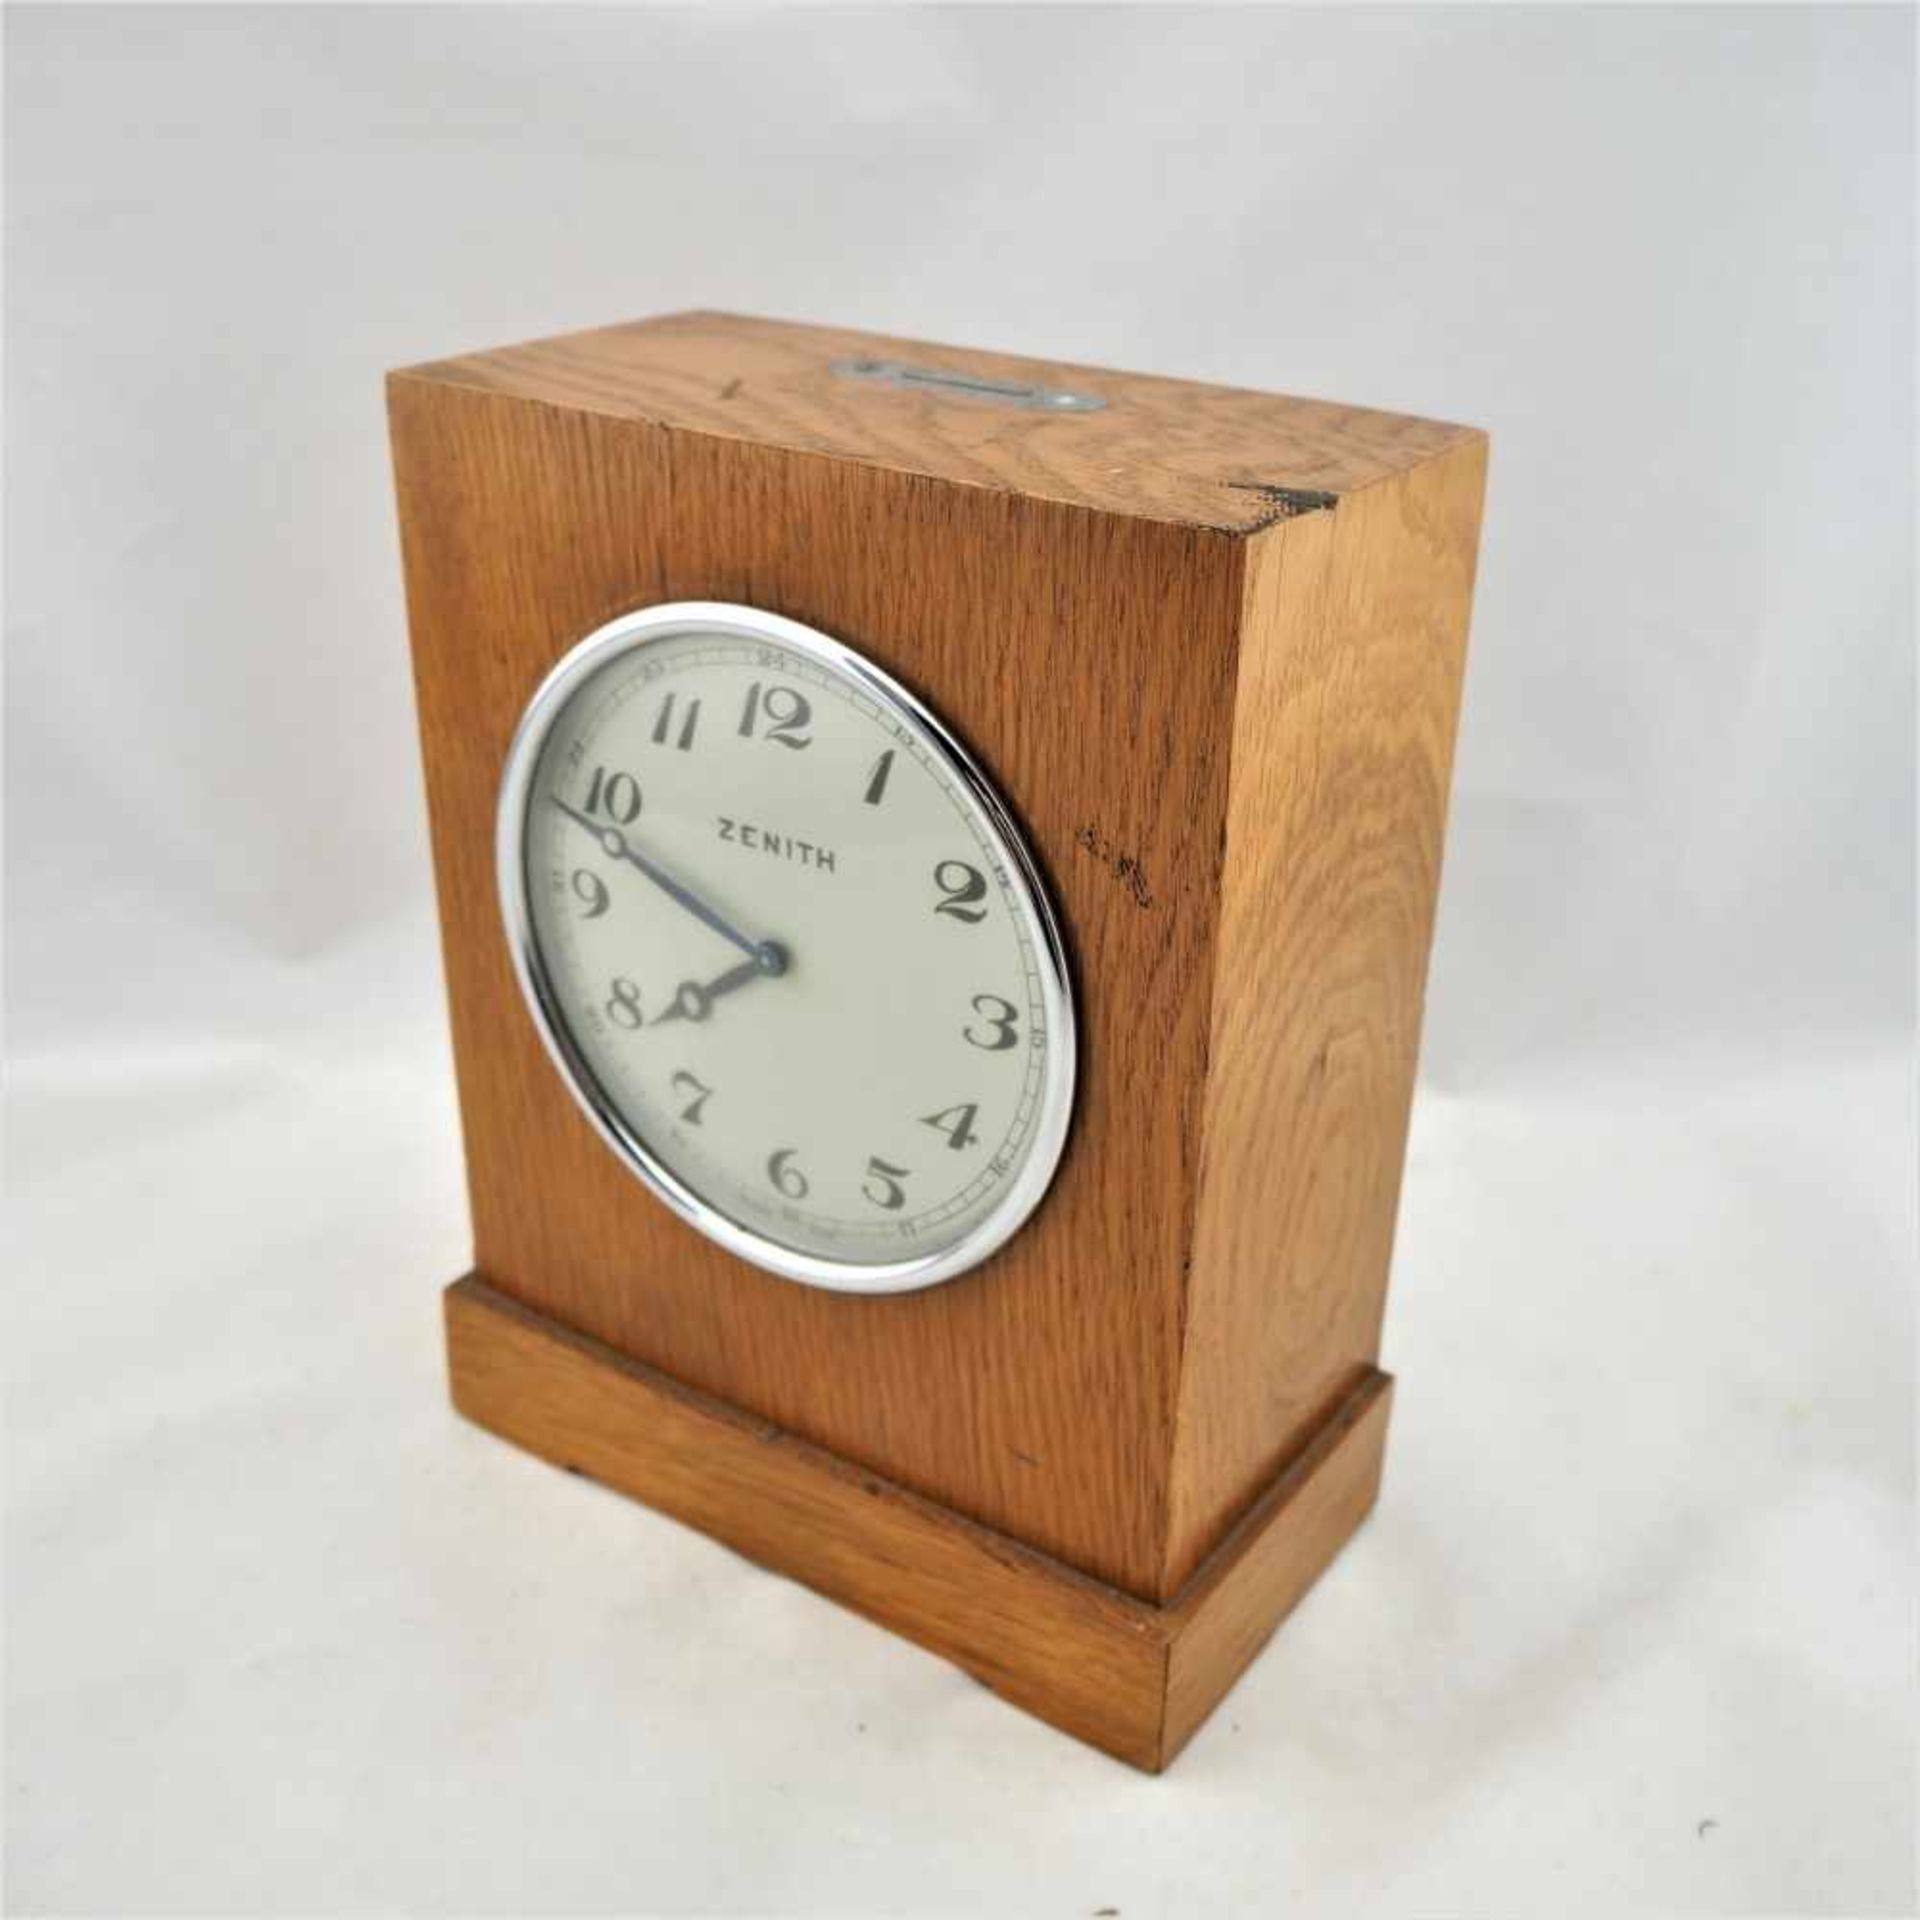 Seltene "Zenith" Spareruhr, 30er JahreGehäuse aus Holz (Eiche), mittig eingebautes Uhrwerk von "